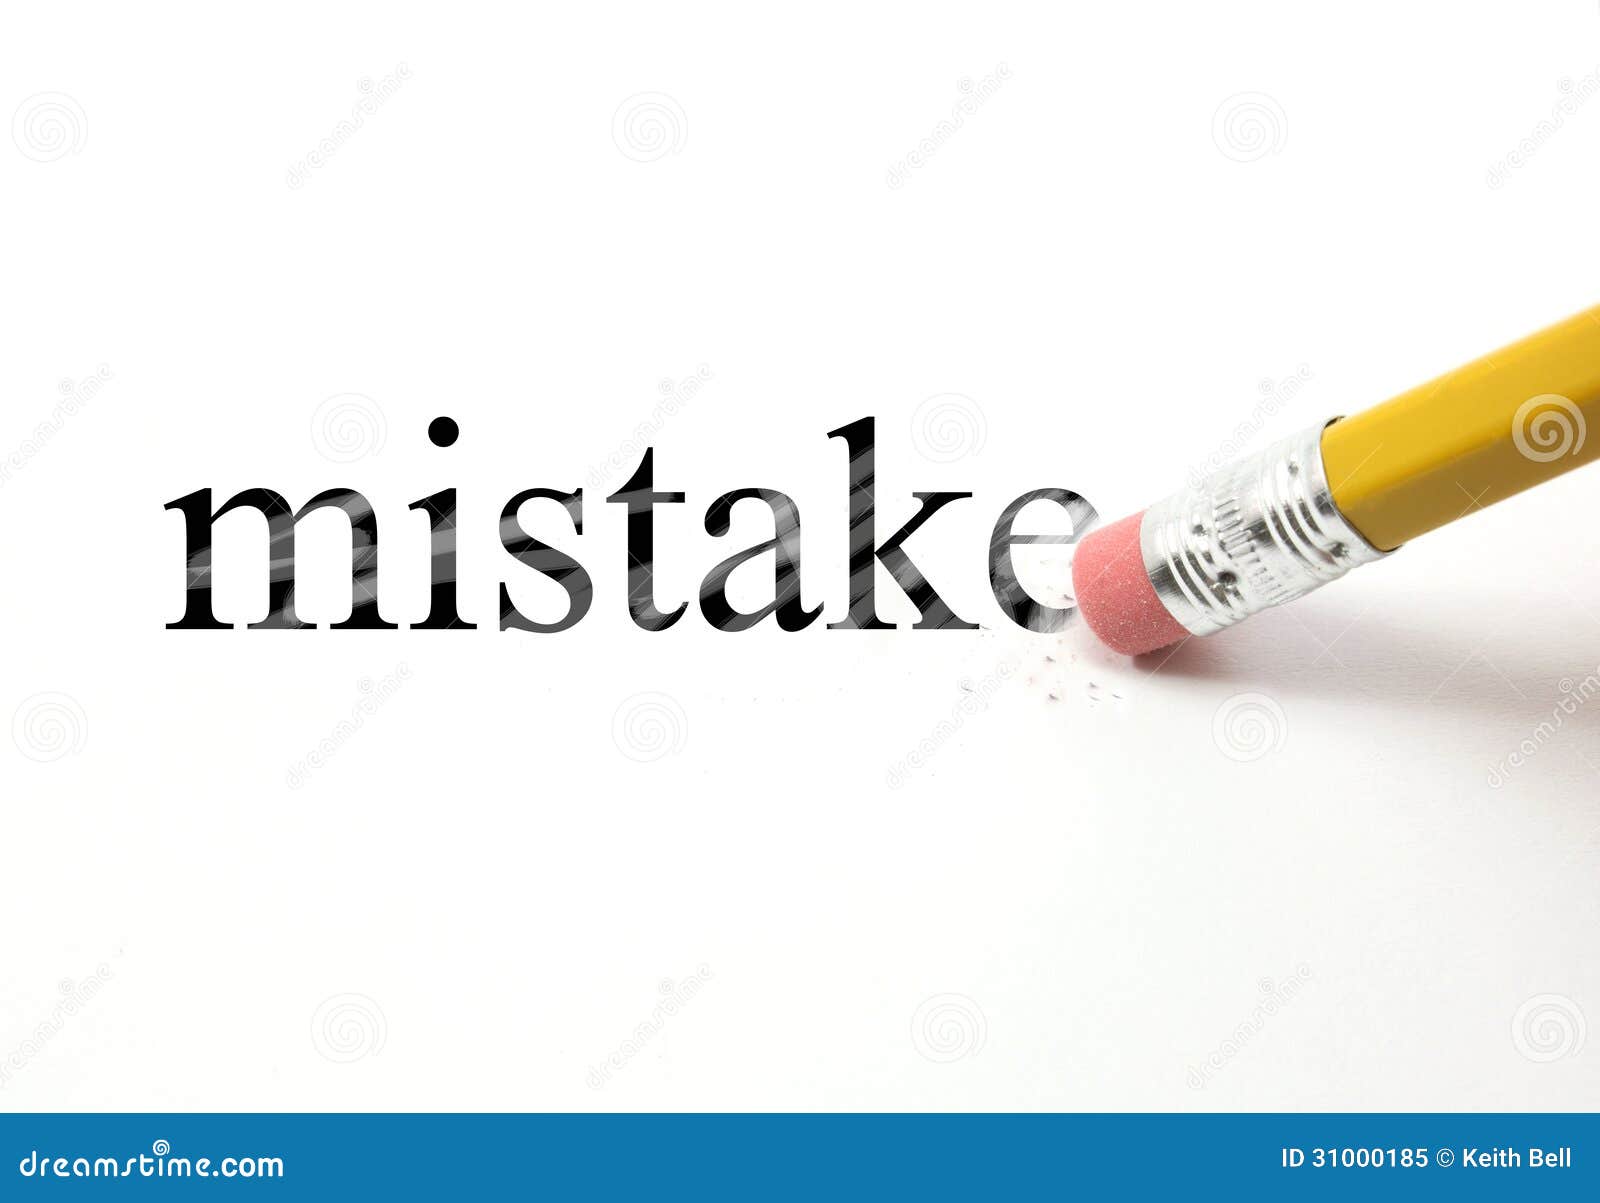 erasing your mistake